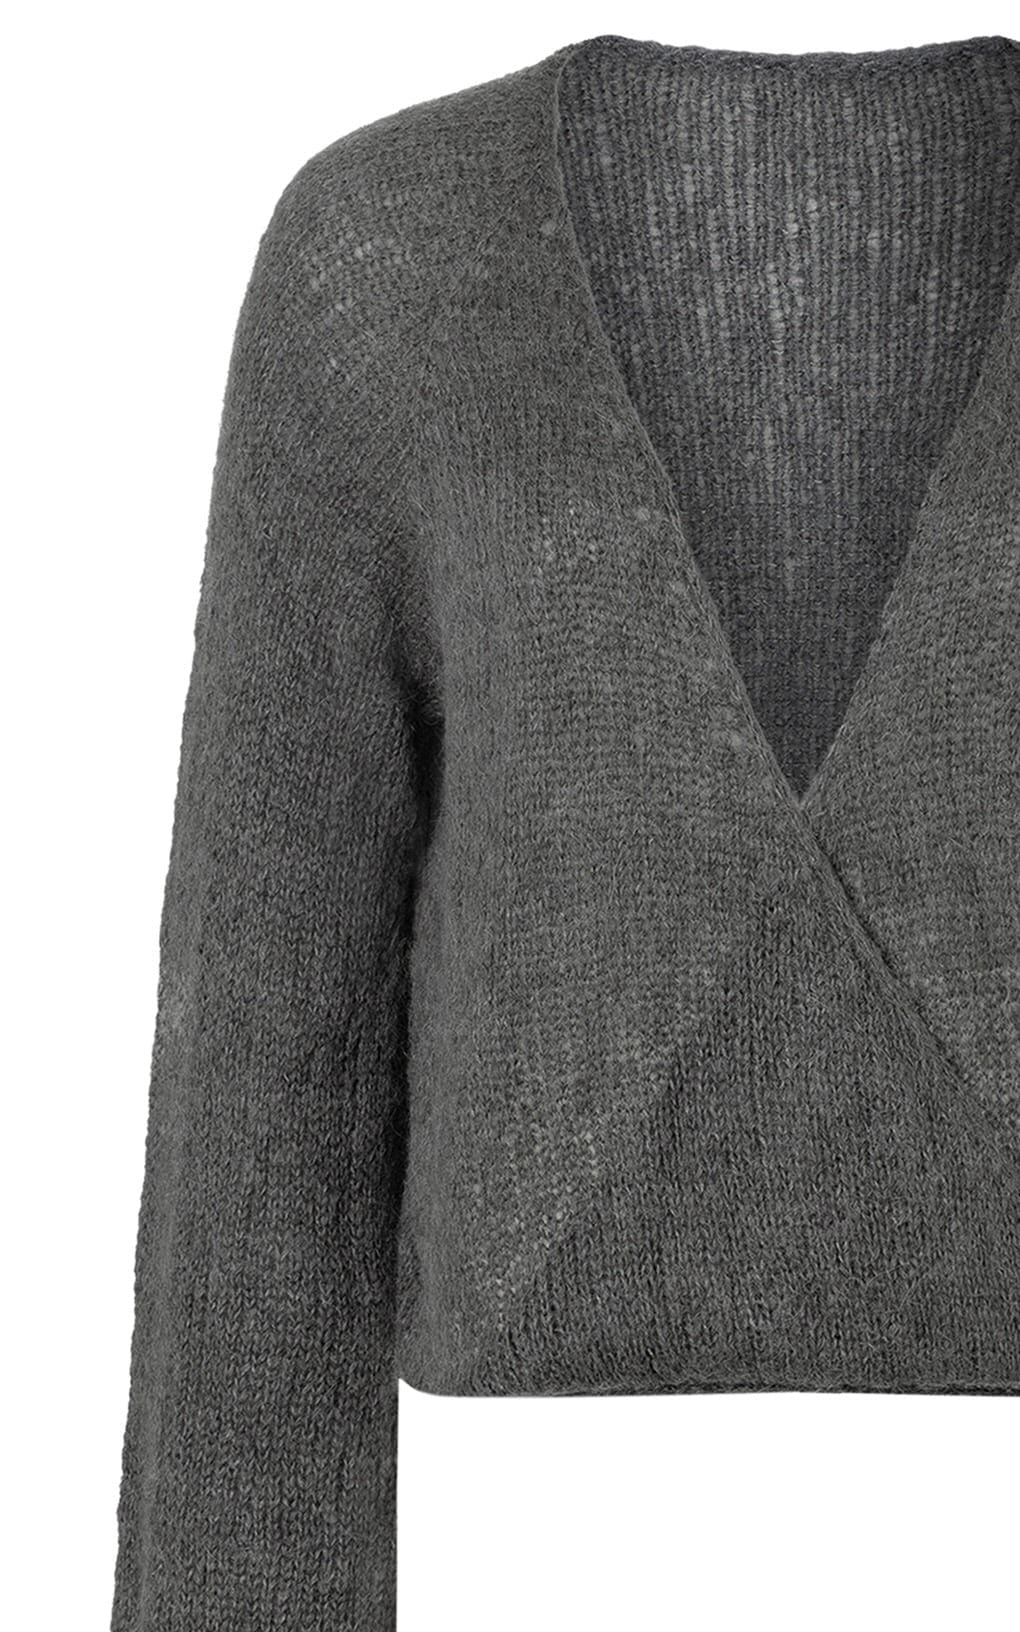 Camille Sweater - SETASURI - Strickset von KOLIBRI_BY_JOHANNA jetzt online kaufen bei OONIQUE